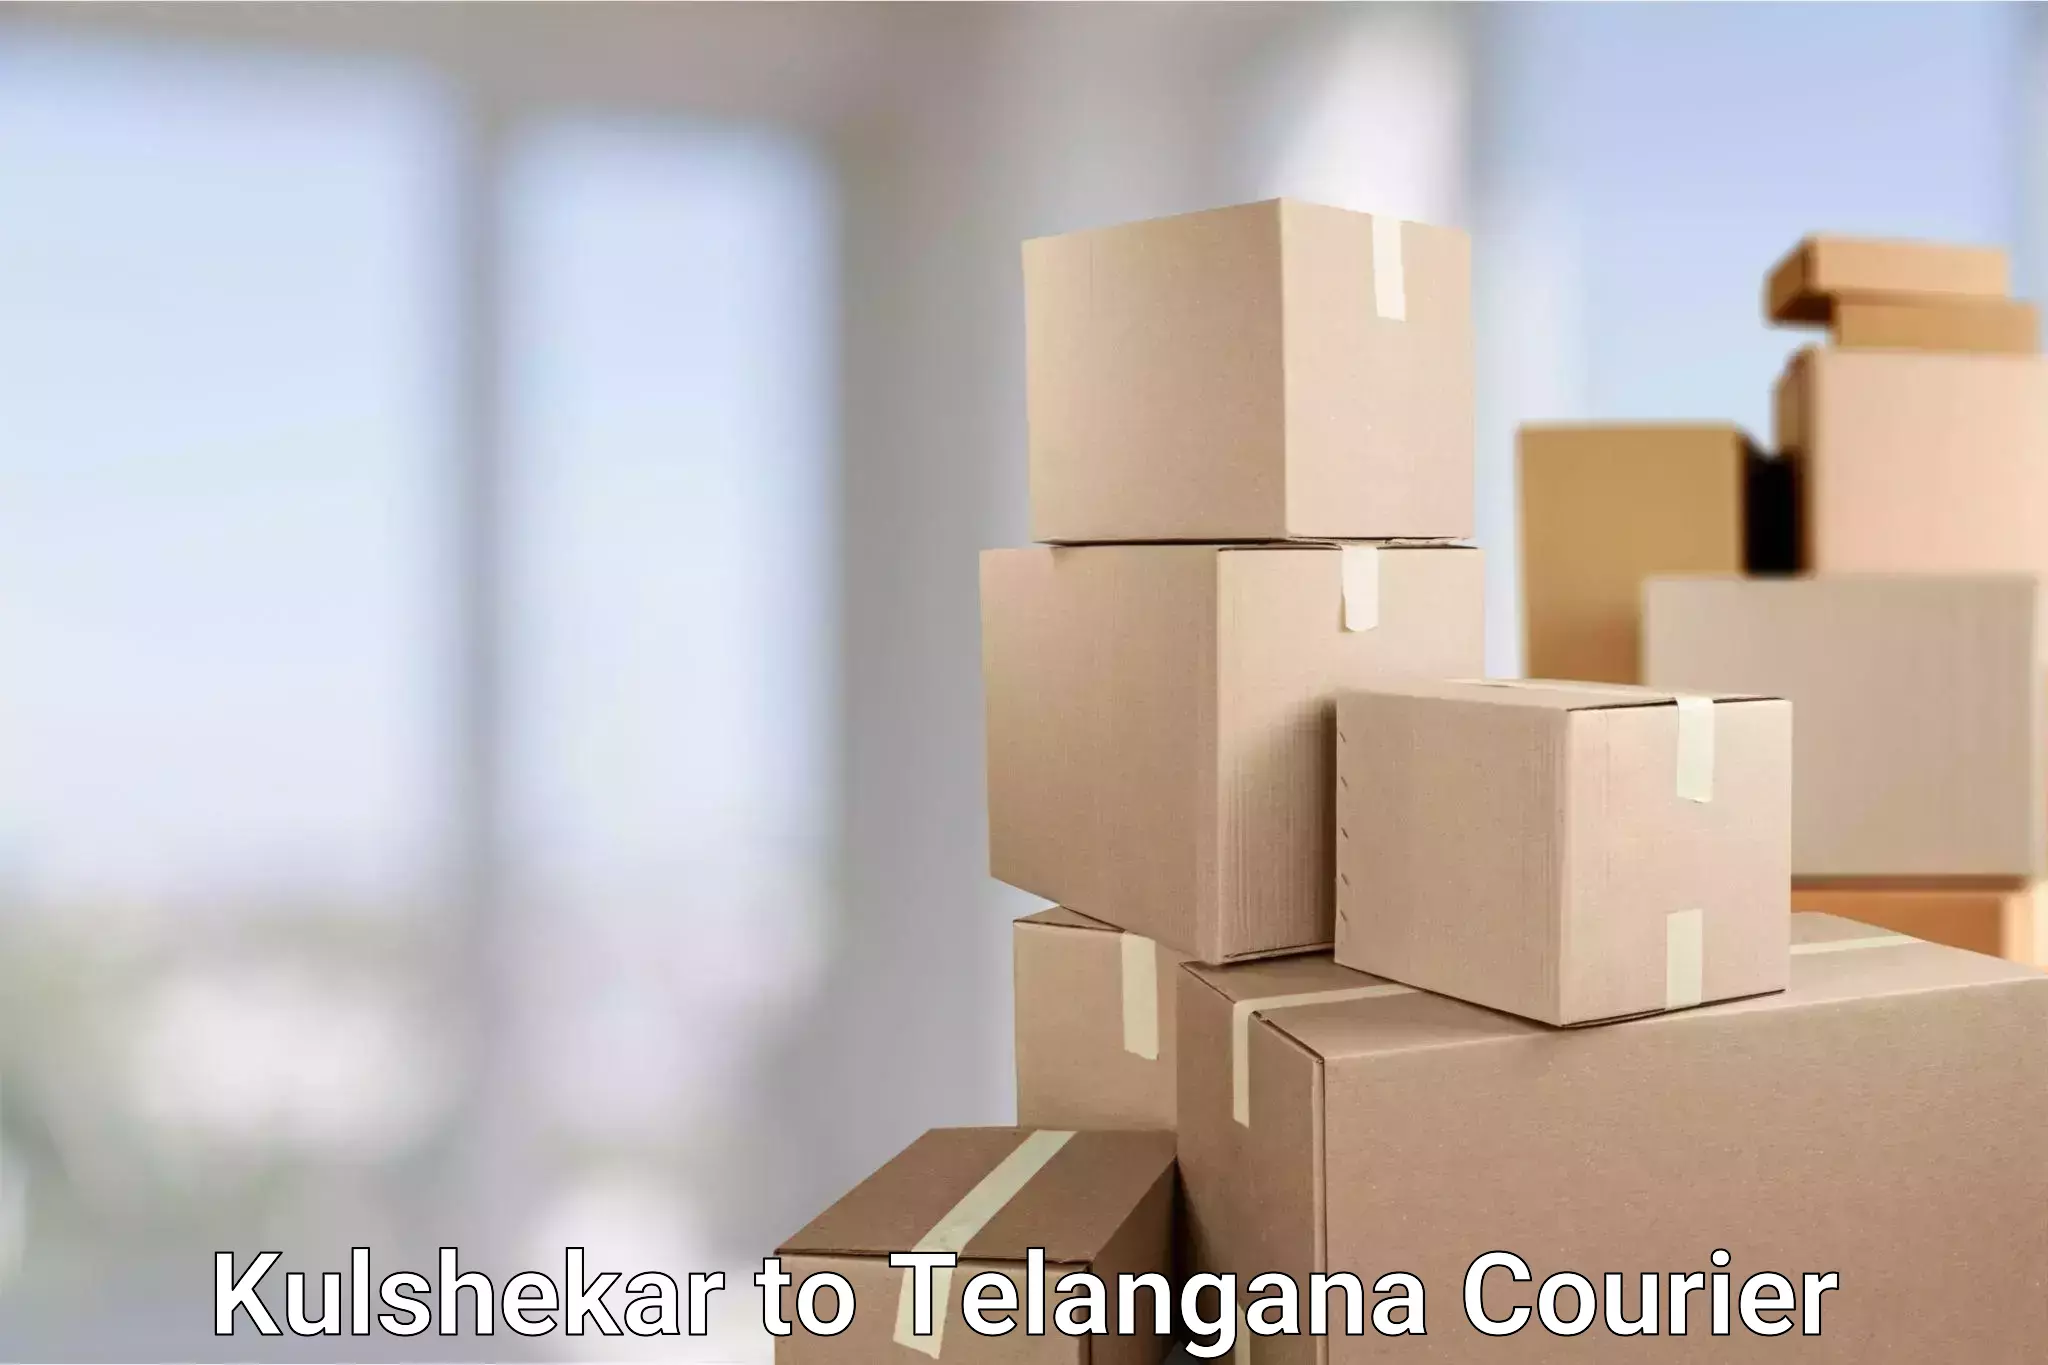 On-demand shipping options Kulshekar to Karimnagar